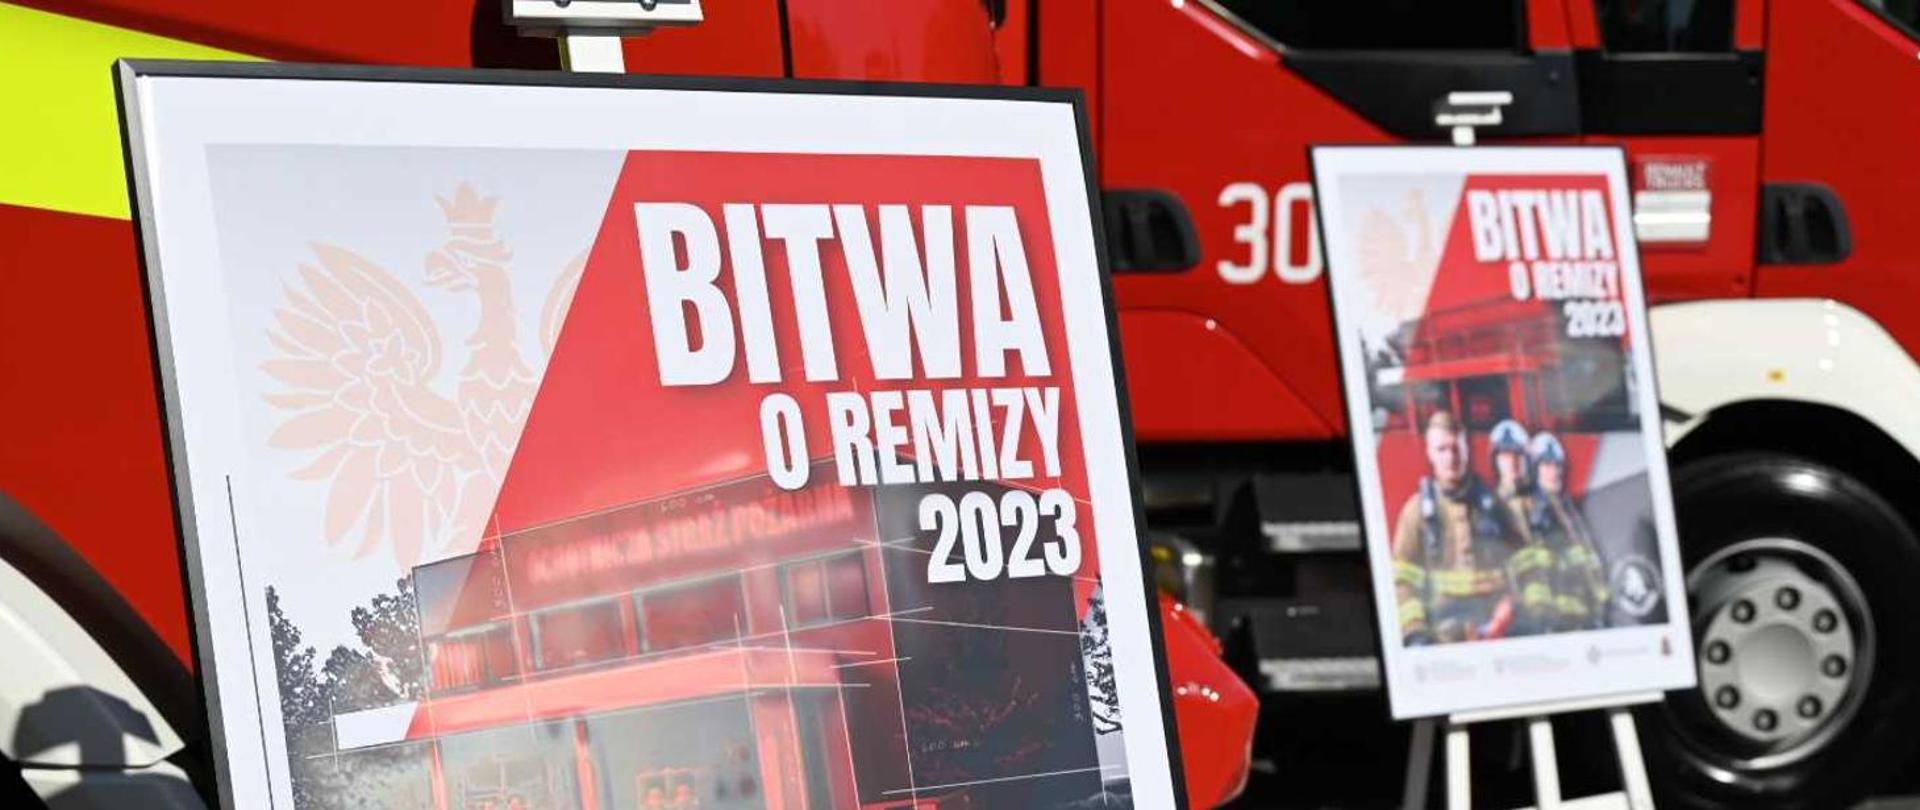 Dwa plakaty promocyjne akcji "Bitwa o Remizy 2023" na tle pojazdów pożarniczych.